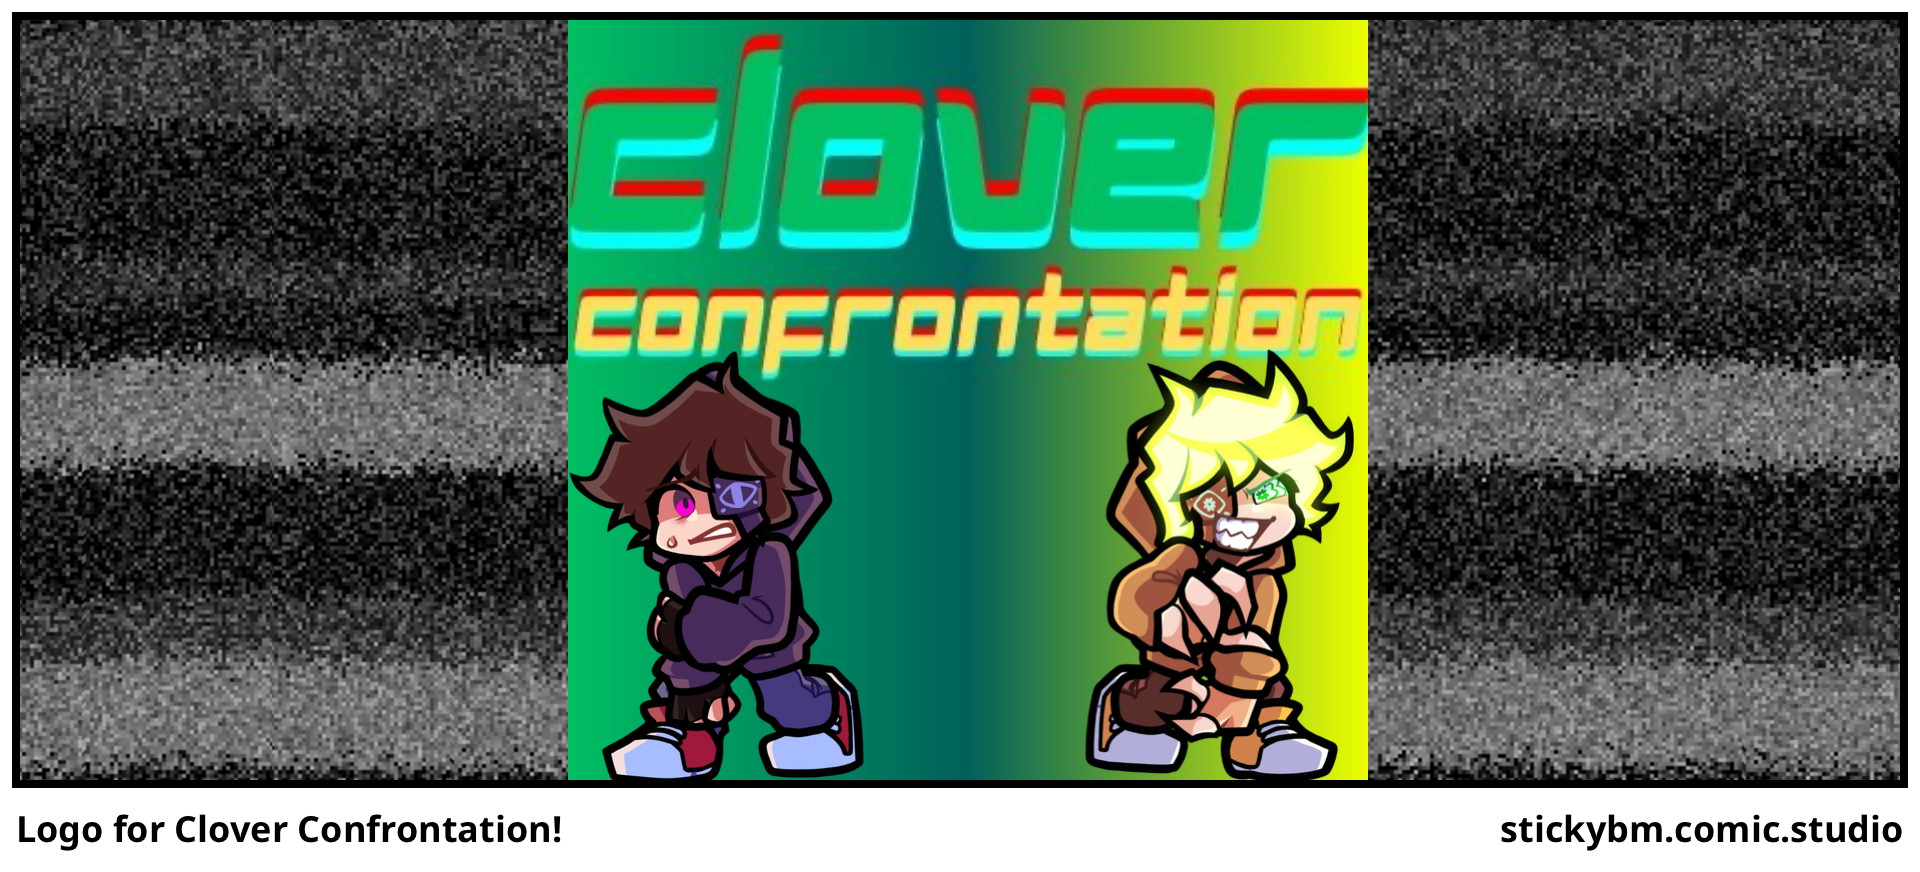 Logo for Clover Confrontation!